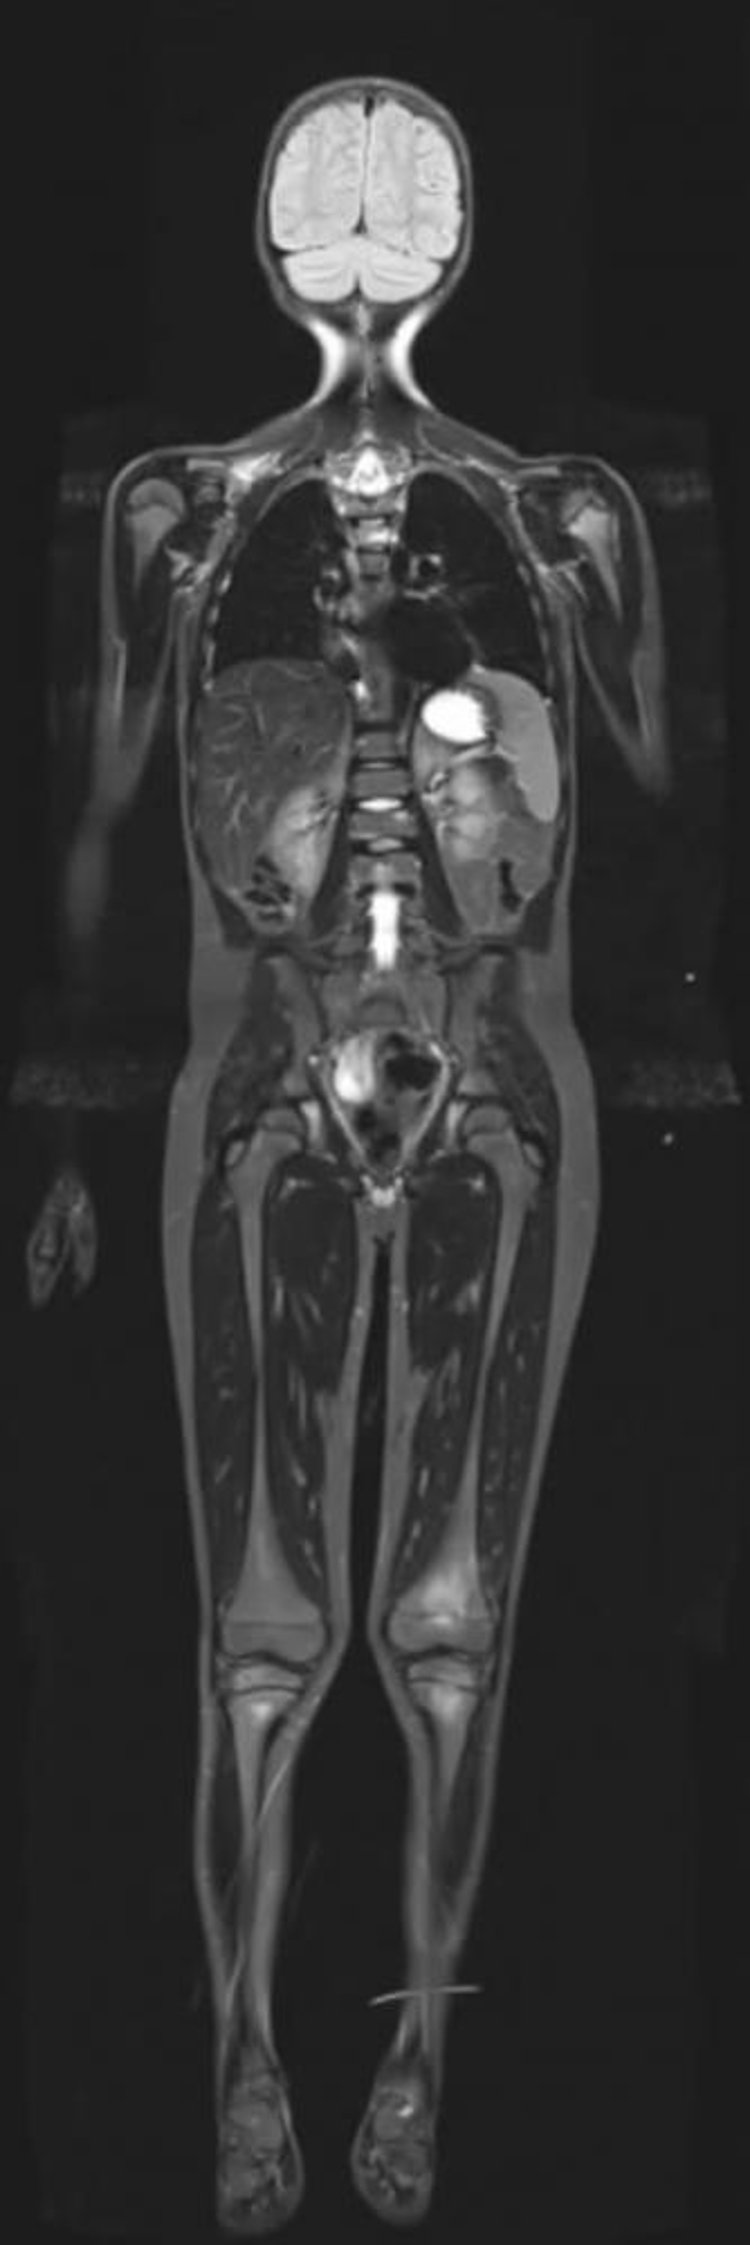 全身のshort, tight inversion recovery MRI